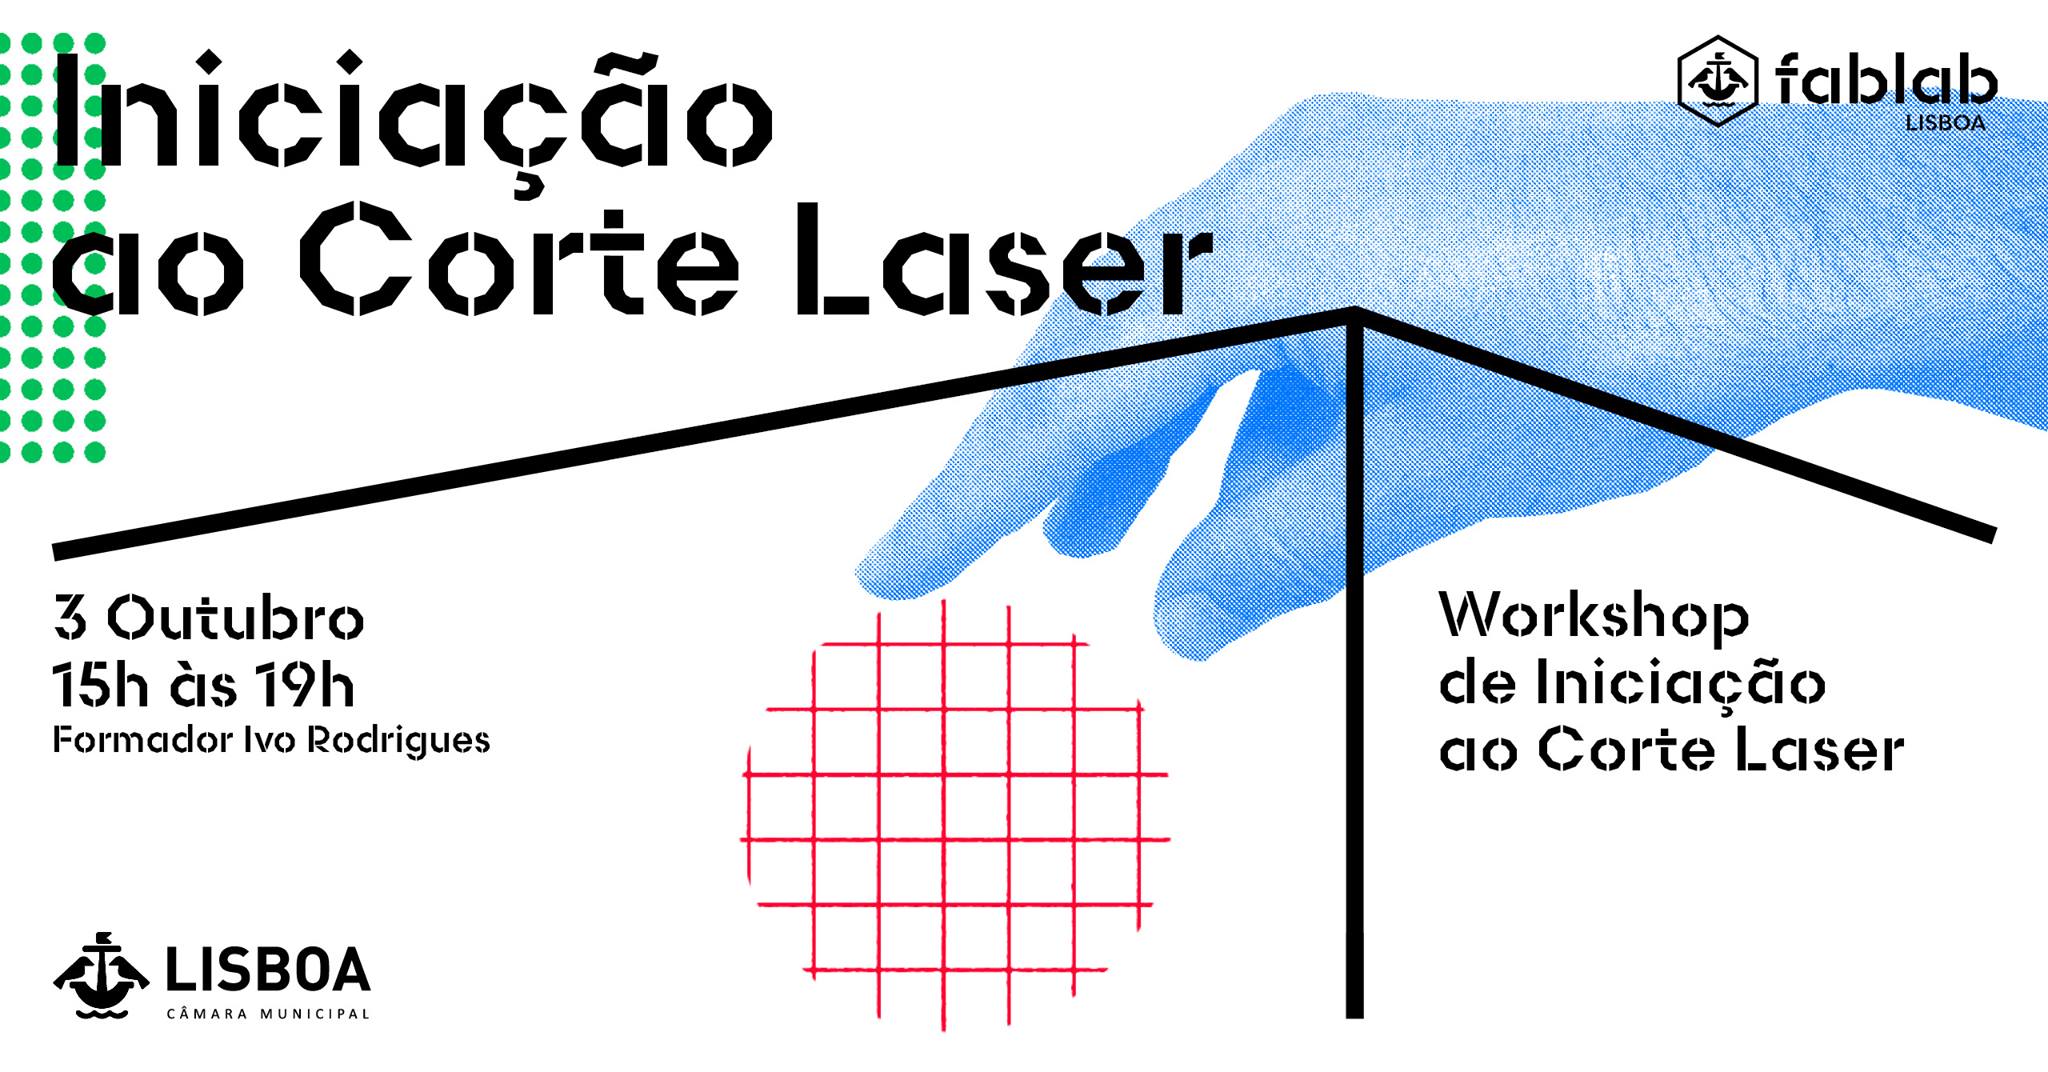 Iniciação ao Corte Laser